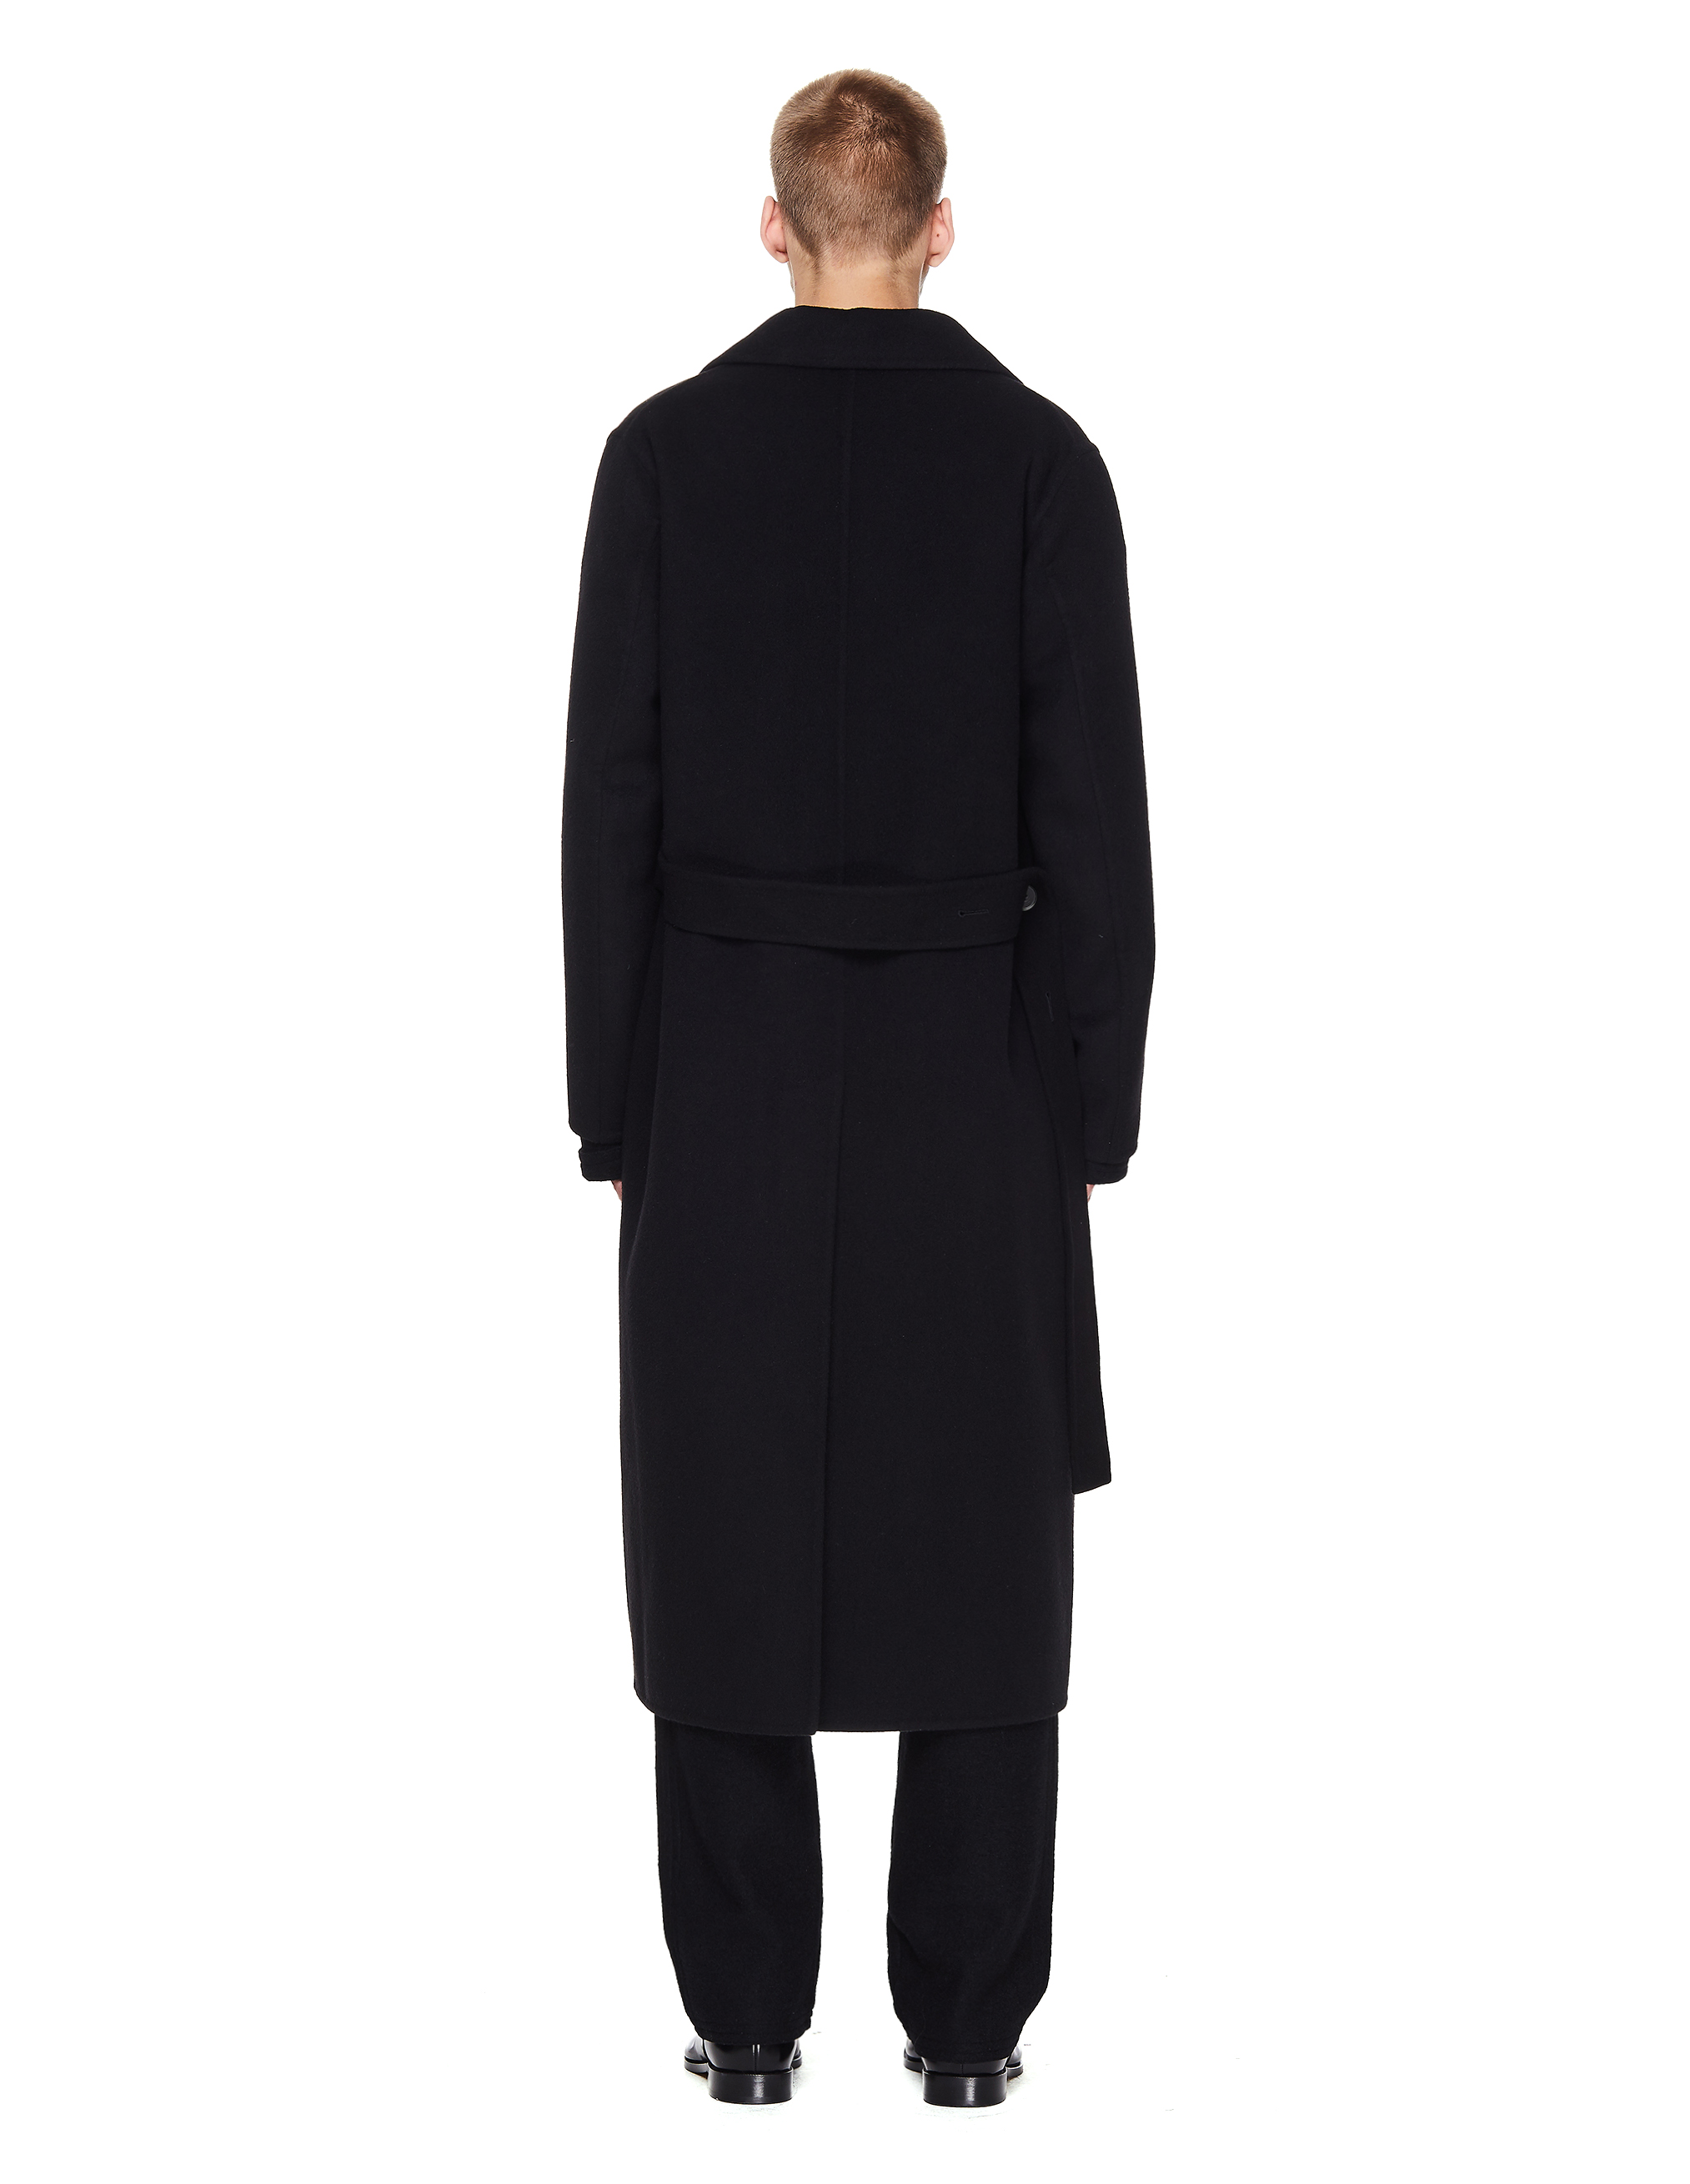 Черное кашемировое пальто с поясом - Jil Sander JSMR120103/MR100103/001 Фото 3